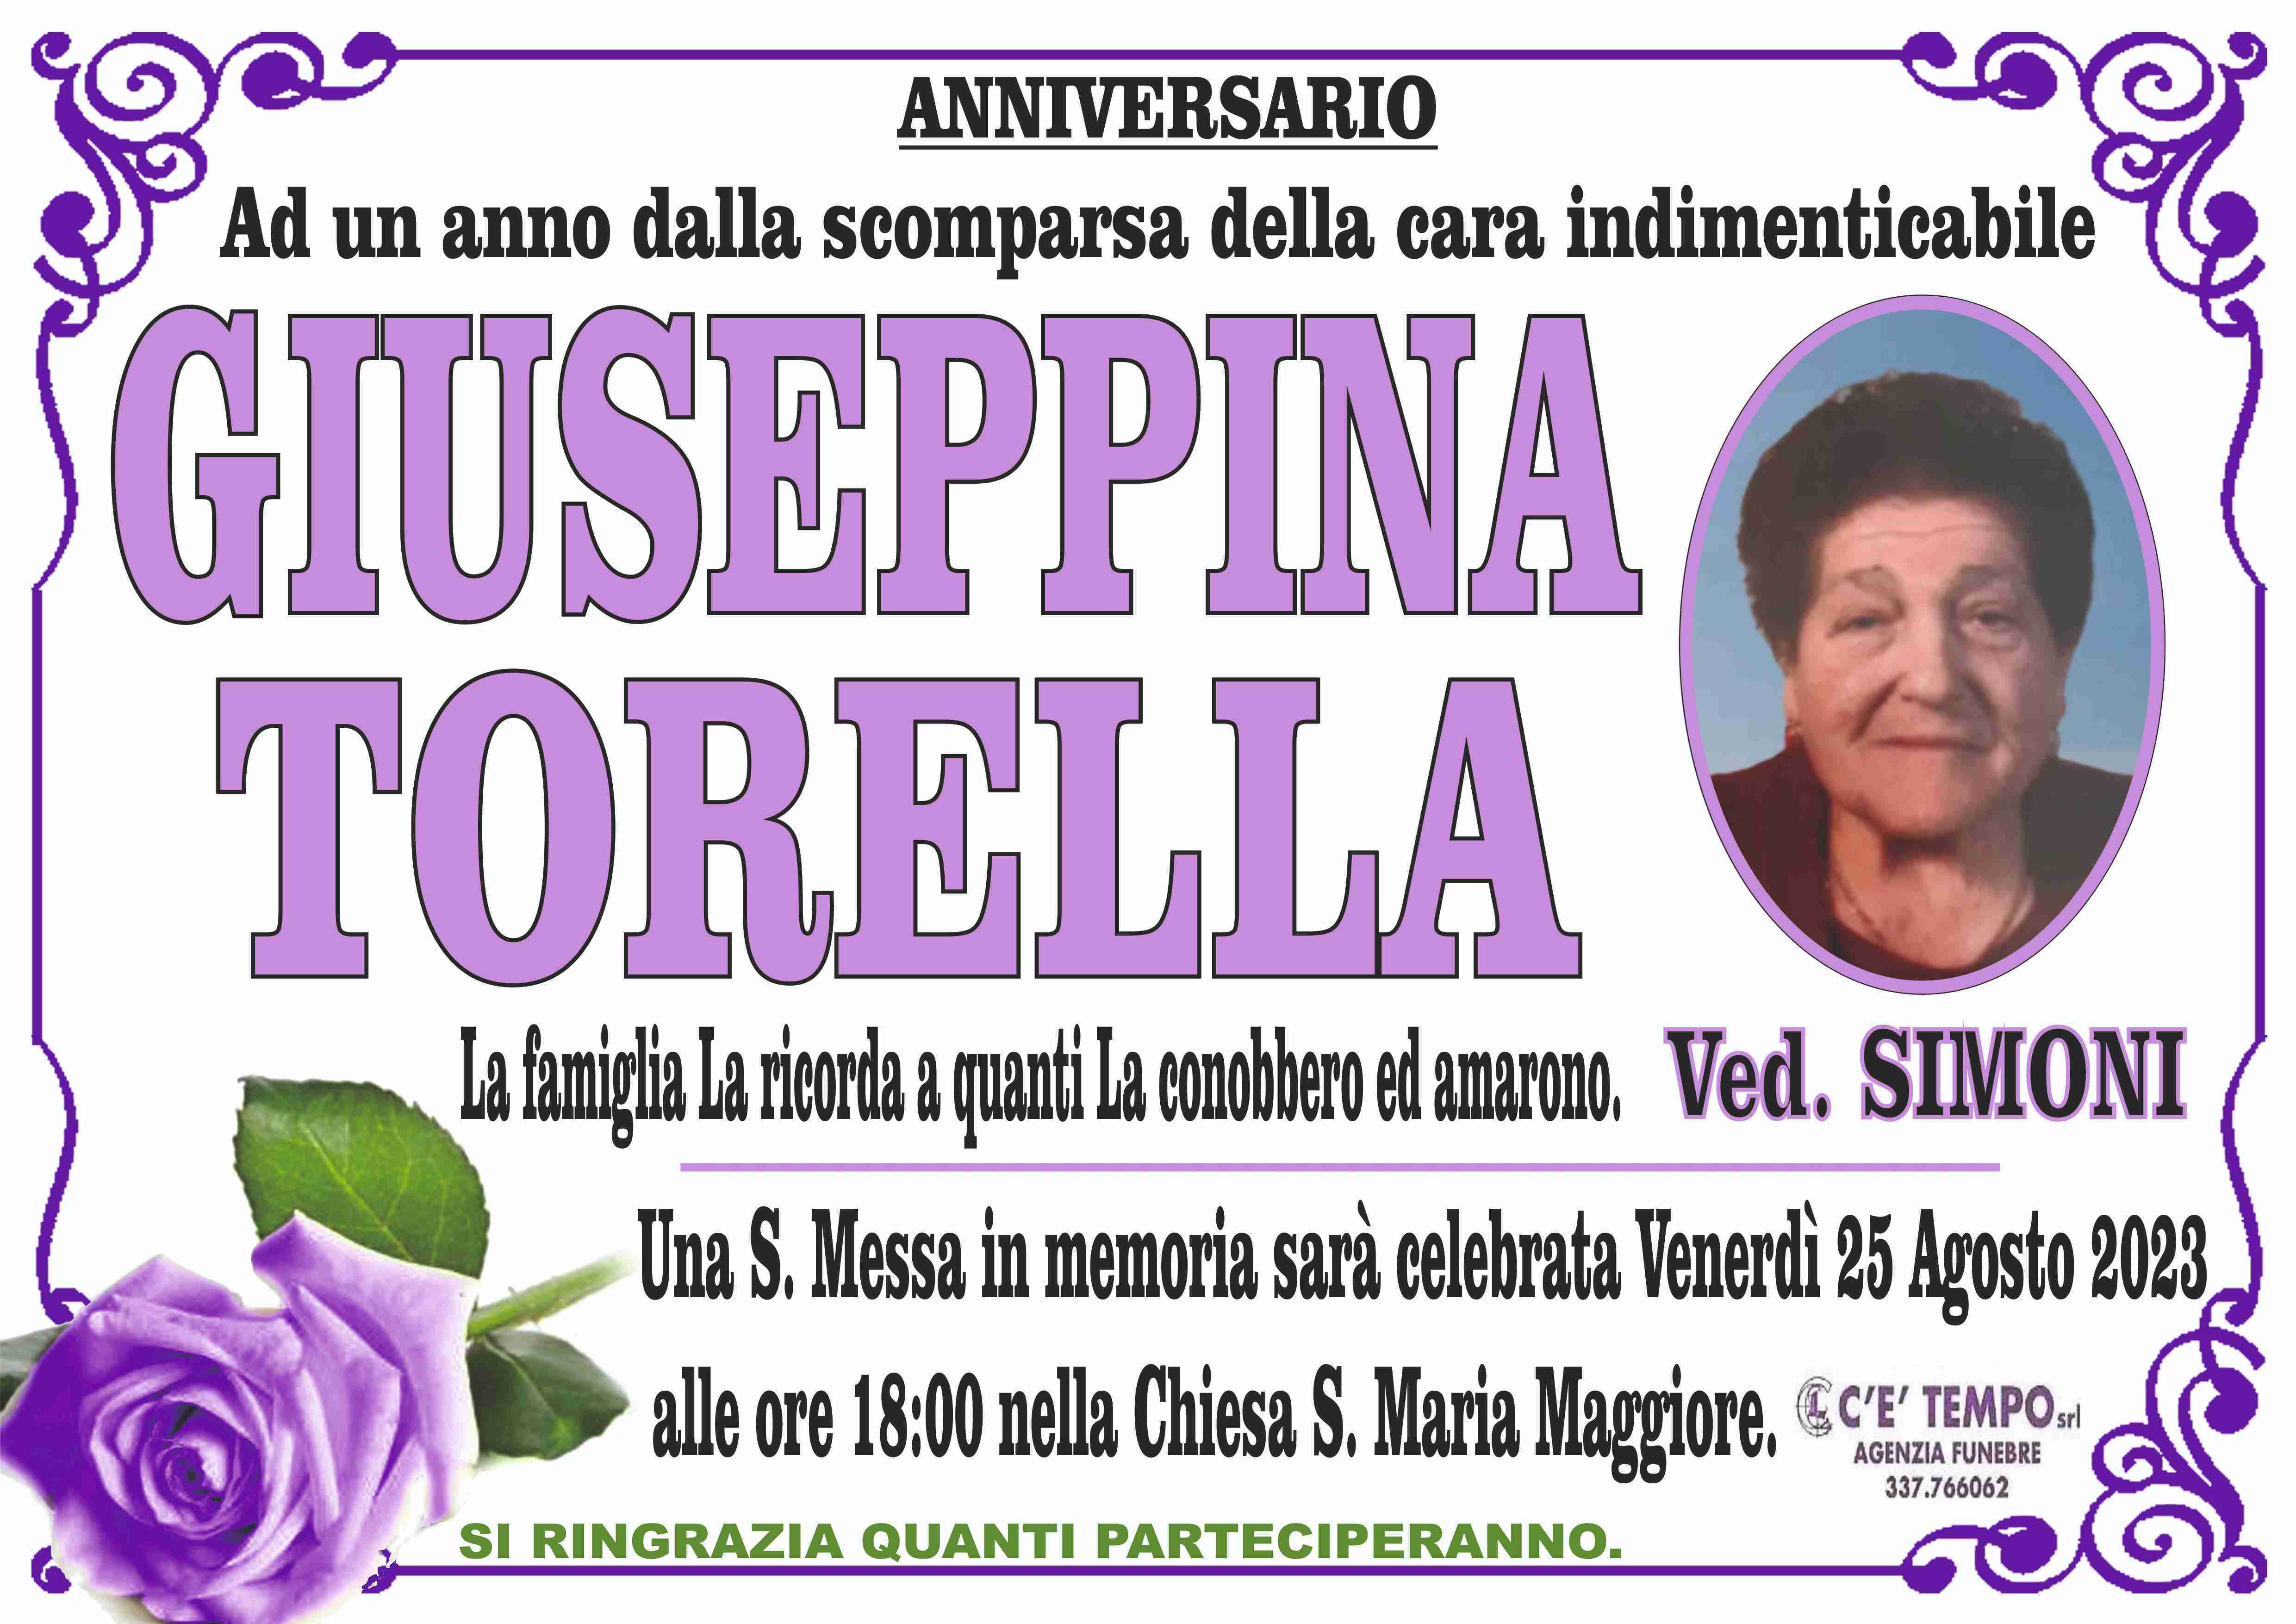 Giuseppina Torella